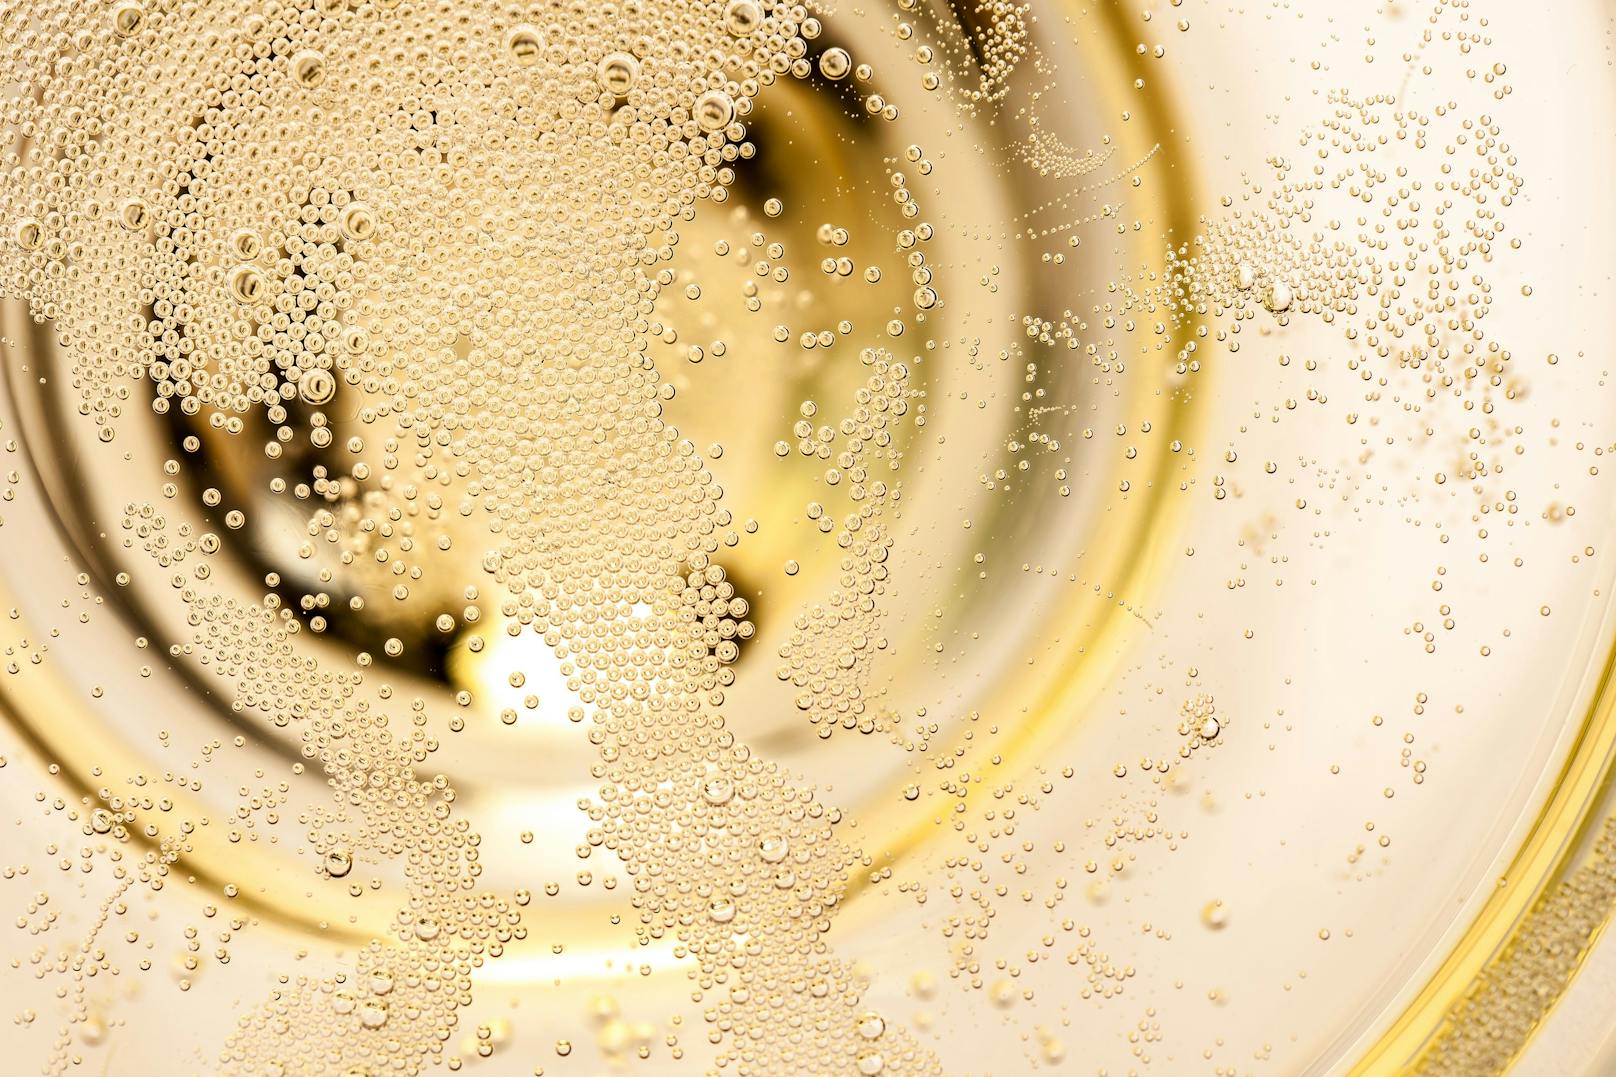 <strong>2. Quirl, um die Bubbles zu minimieren!&nbsp;</strong>Da sollte man gleich etwas Anderes Trinken, erklärt uns der Experte schmunzelnd.